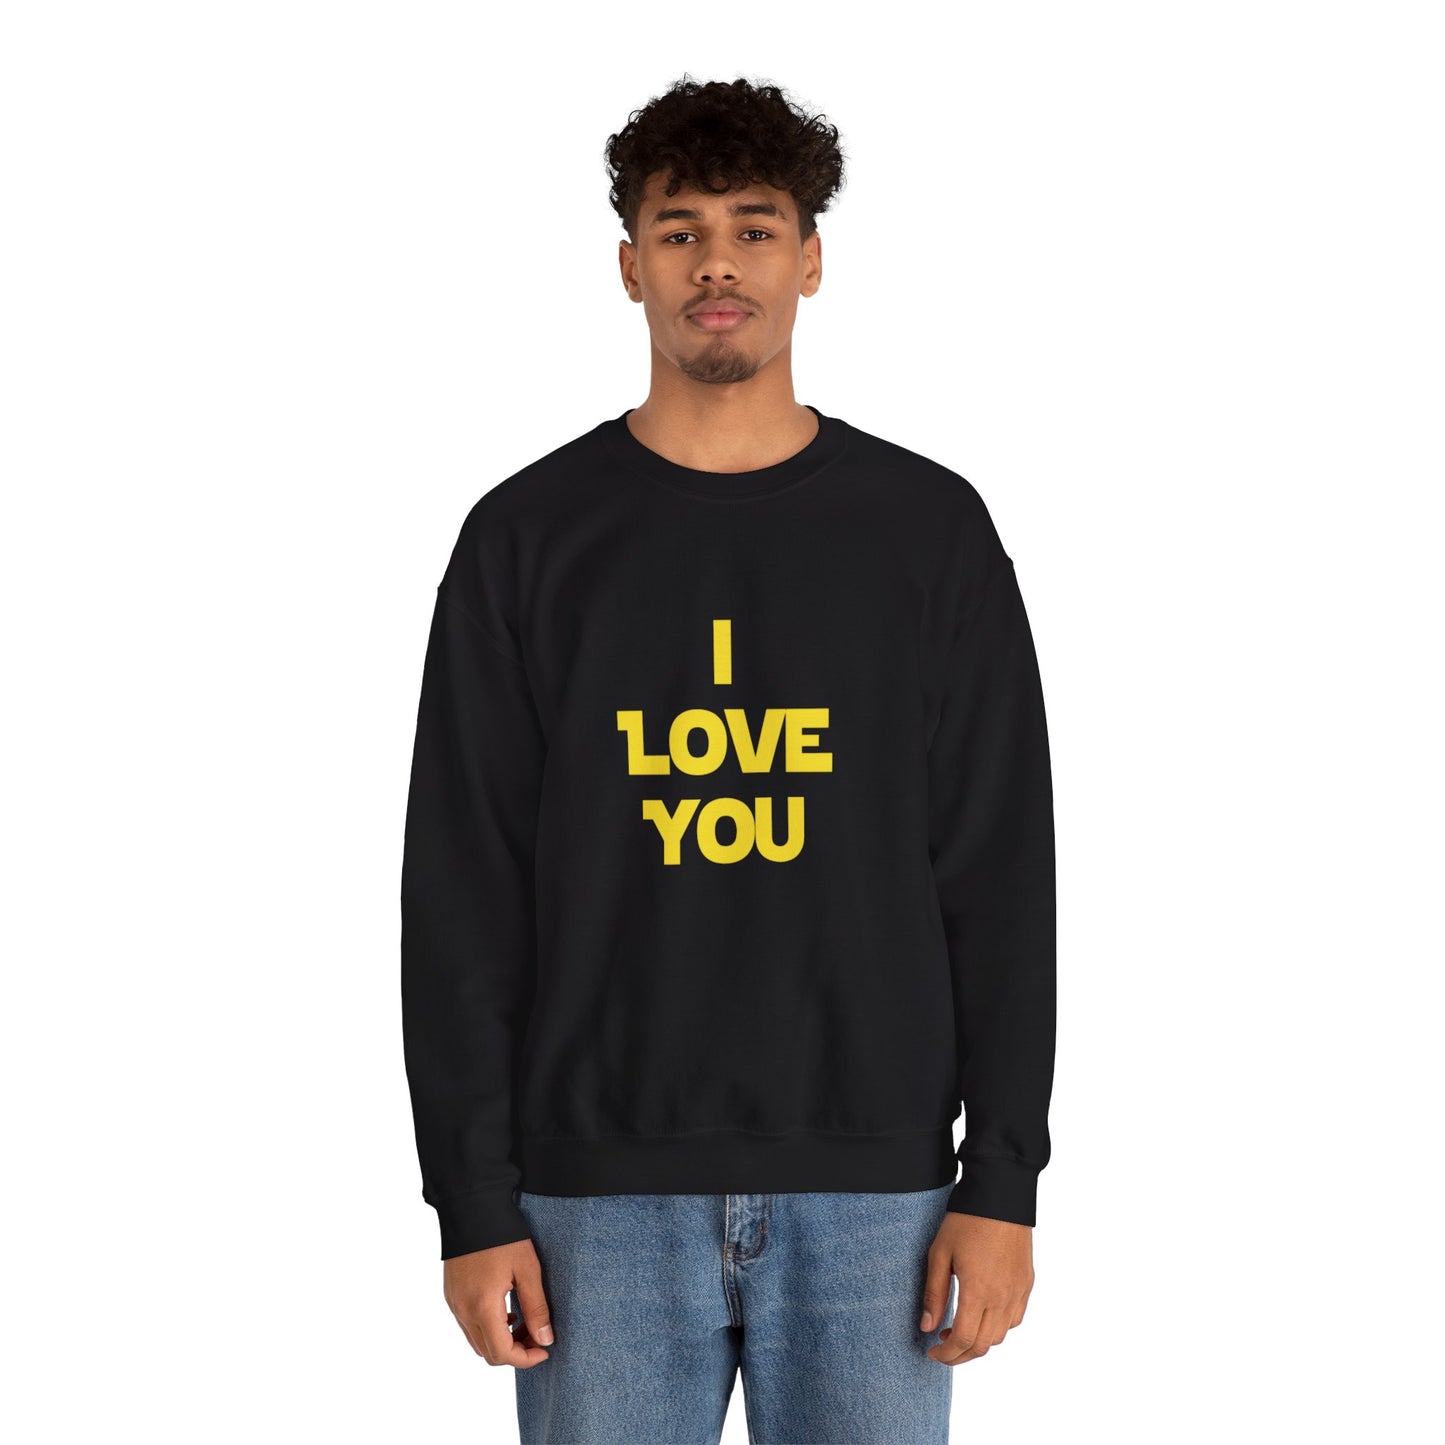 I LOVE YOU, I KNOW Sweatshirt